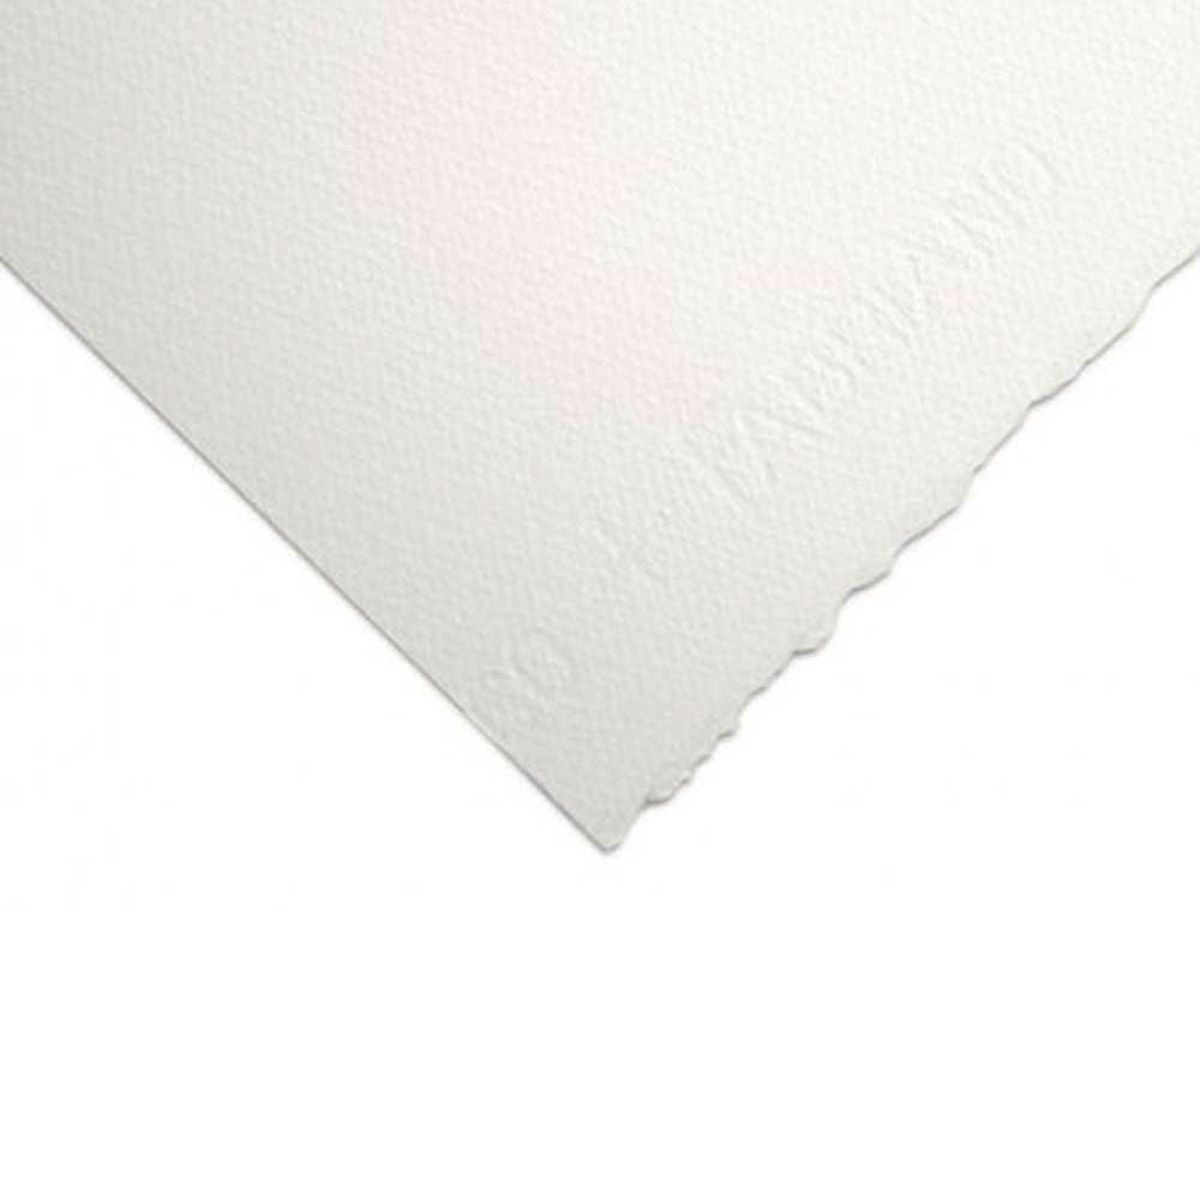 Artistico Extra White Cold Press 300gsm/140lb 22"x30" Sheet